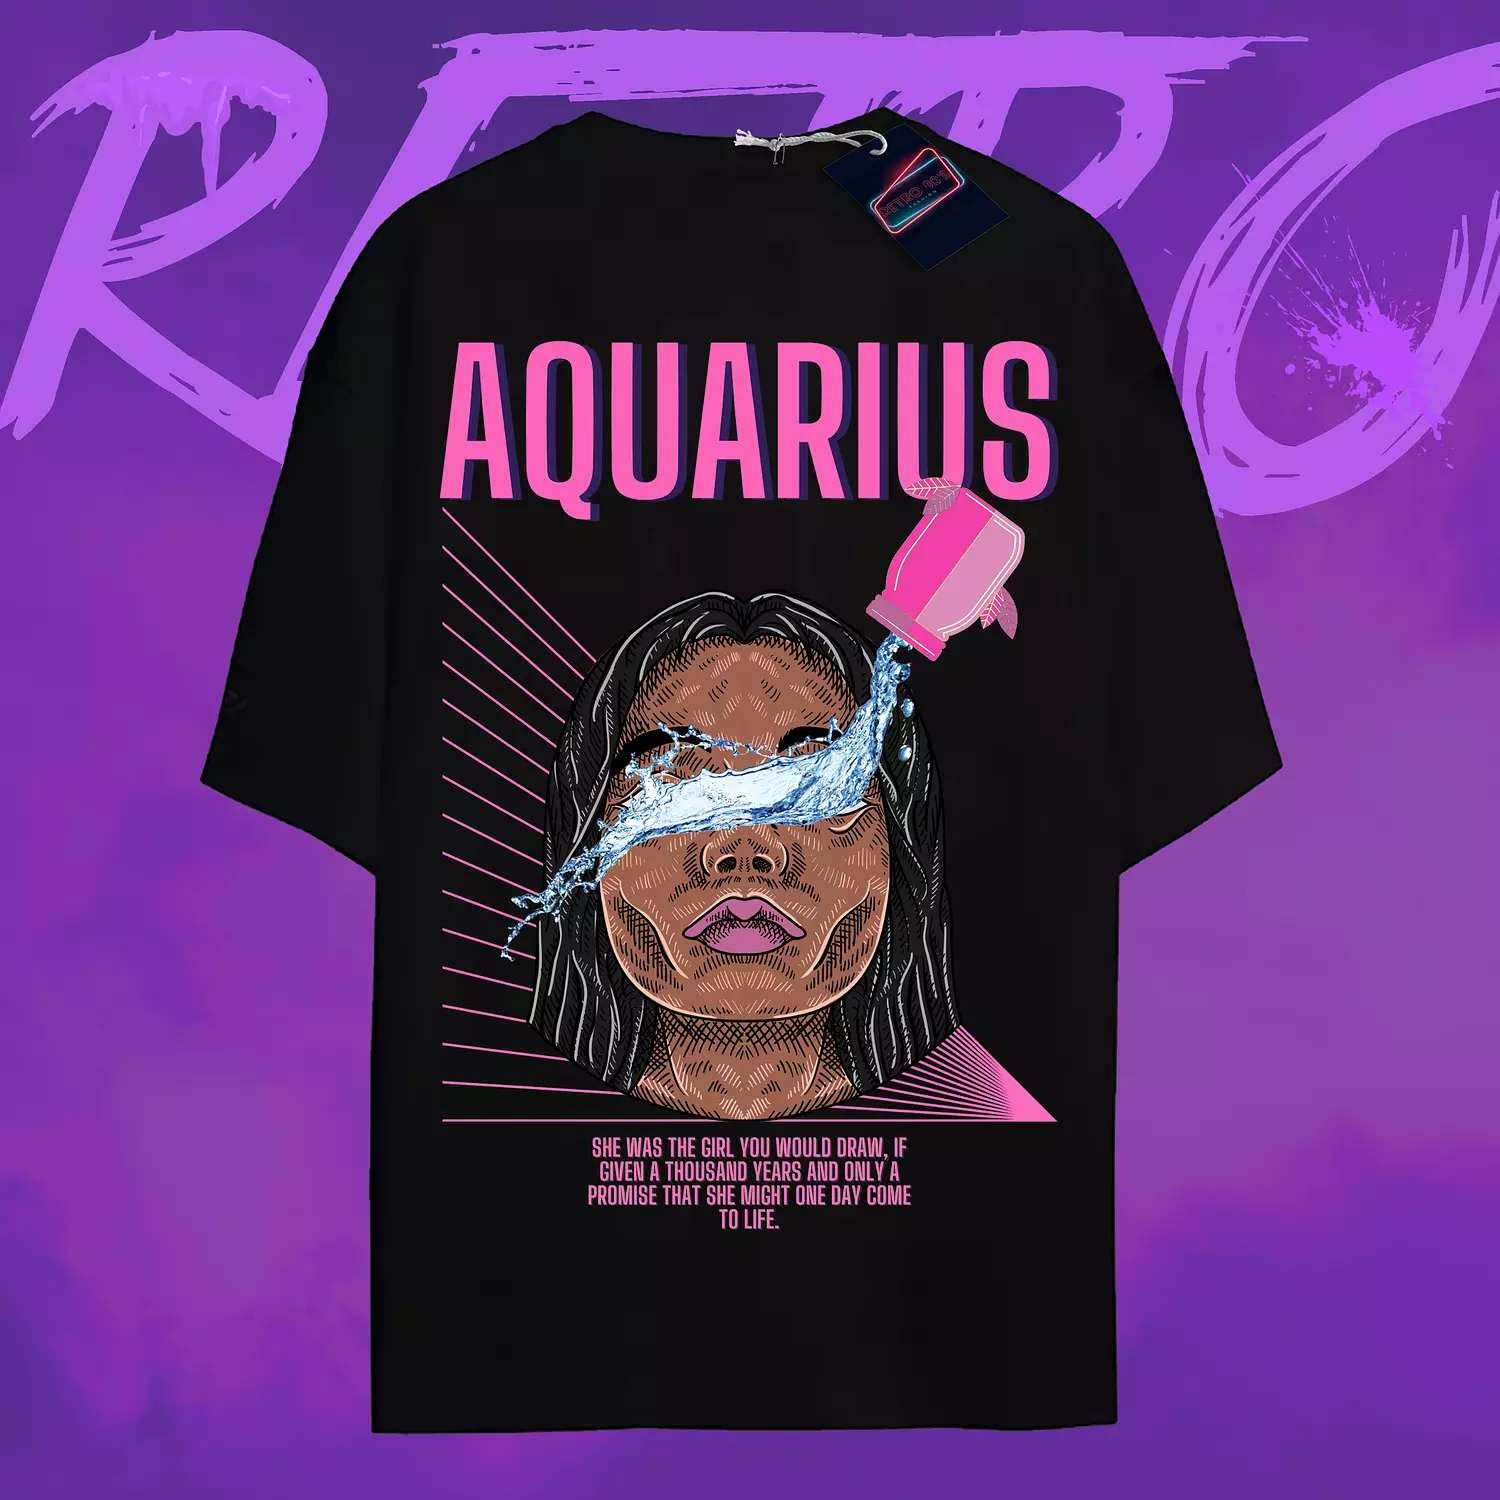 Aquarius T-shirt hover image